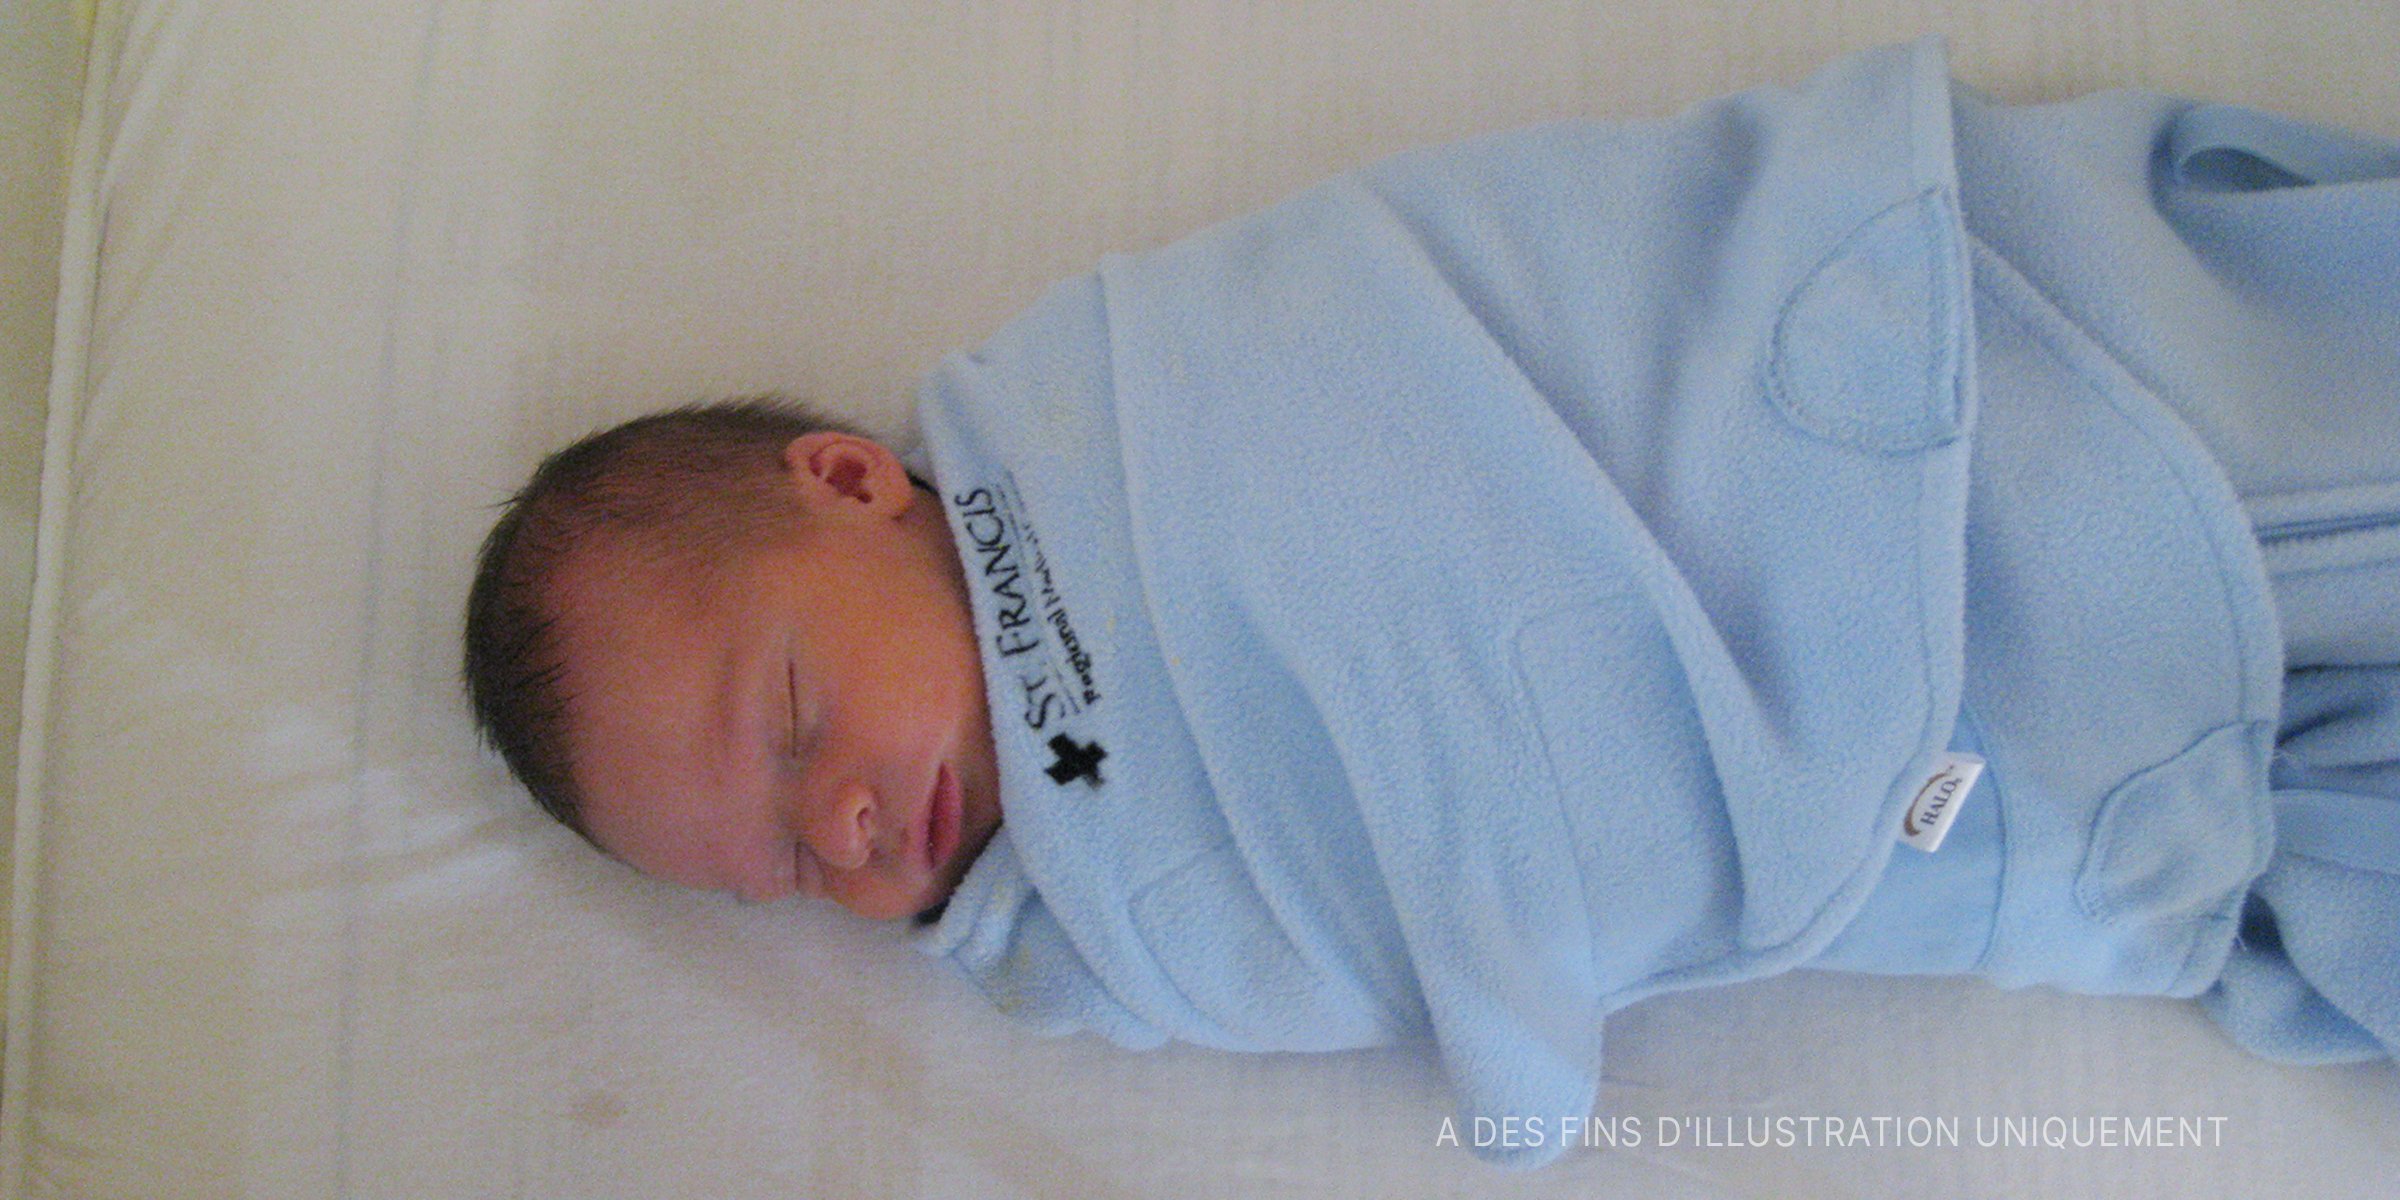 Un bébé emmailloté dans une couverture bleue | Flickr / EtanSivad (CC BY-SA 2.0)